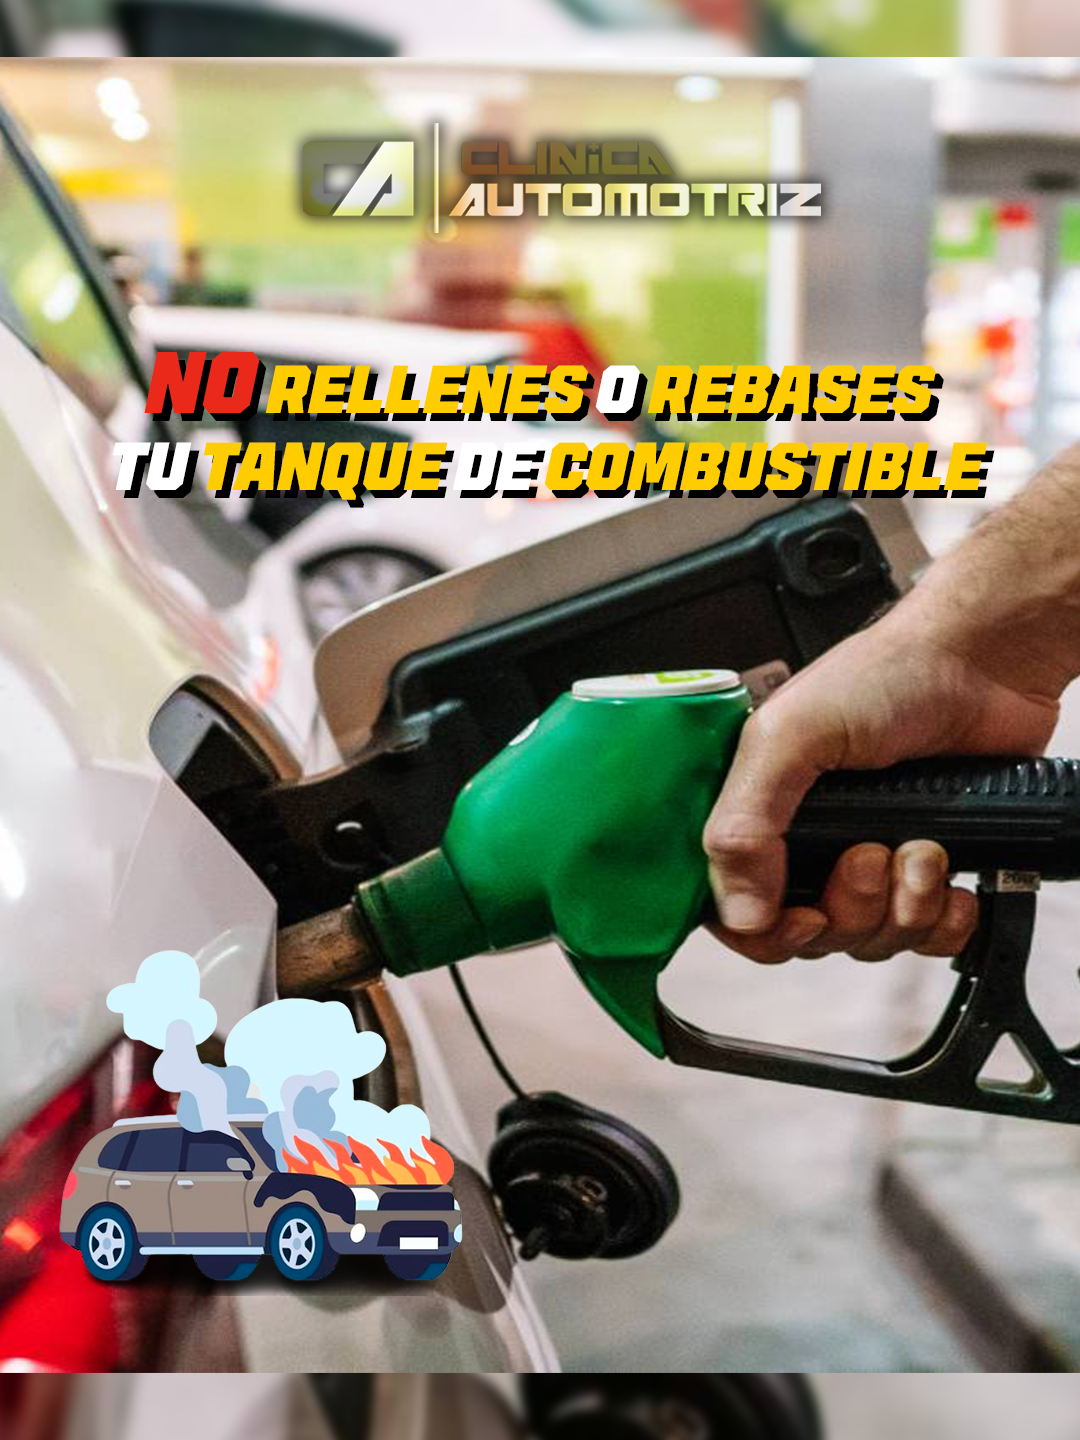 ⚠!No rebases tu tanque de gasolina!⚠ evita posibles incendios🔥, daños al sistema de combustible⛽ y contaminción al medio ambiente🏞️, aquí te explicamos que es lo que pasaría si rellenas tu tanque de combustible. #ClínicaAutomotriz #MantenimientoAutomotriz #consejosautomotrices #foryoupage #TallerMecánico #Parati #Automóviles #instacars #RendimientoVehicular #automotriz #corrosion#foryou #parati #ProblemasDeAuto #tiktok #love #like #follow #tiktoktrend #viralvideos #viralpost #reparacionmotor #mecanicaenaccion #mecanicaautomotriz #chorrillos #limaperu #mecanica #mecanicodeltiktok #popular